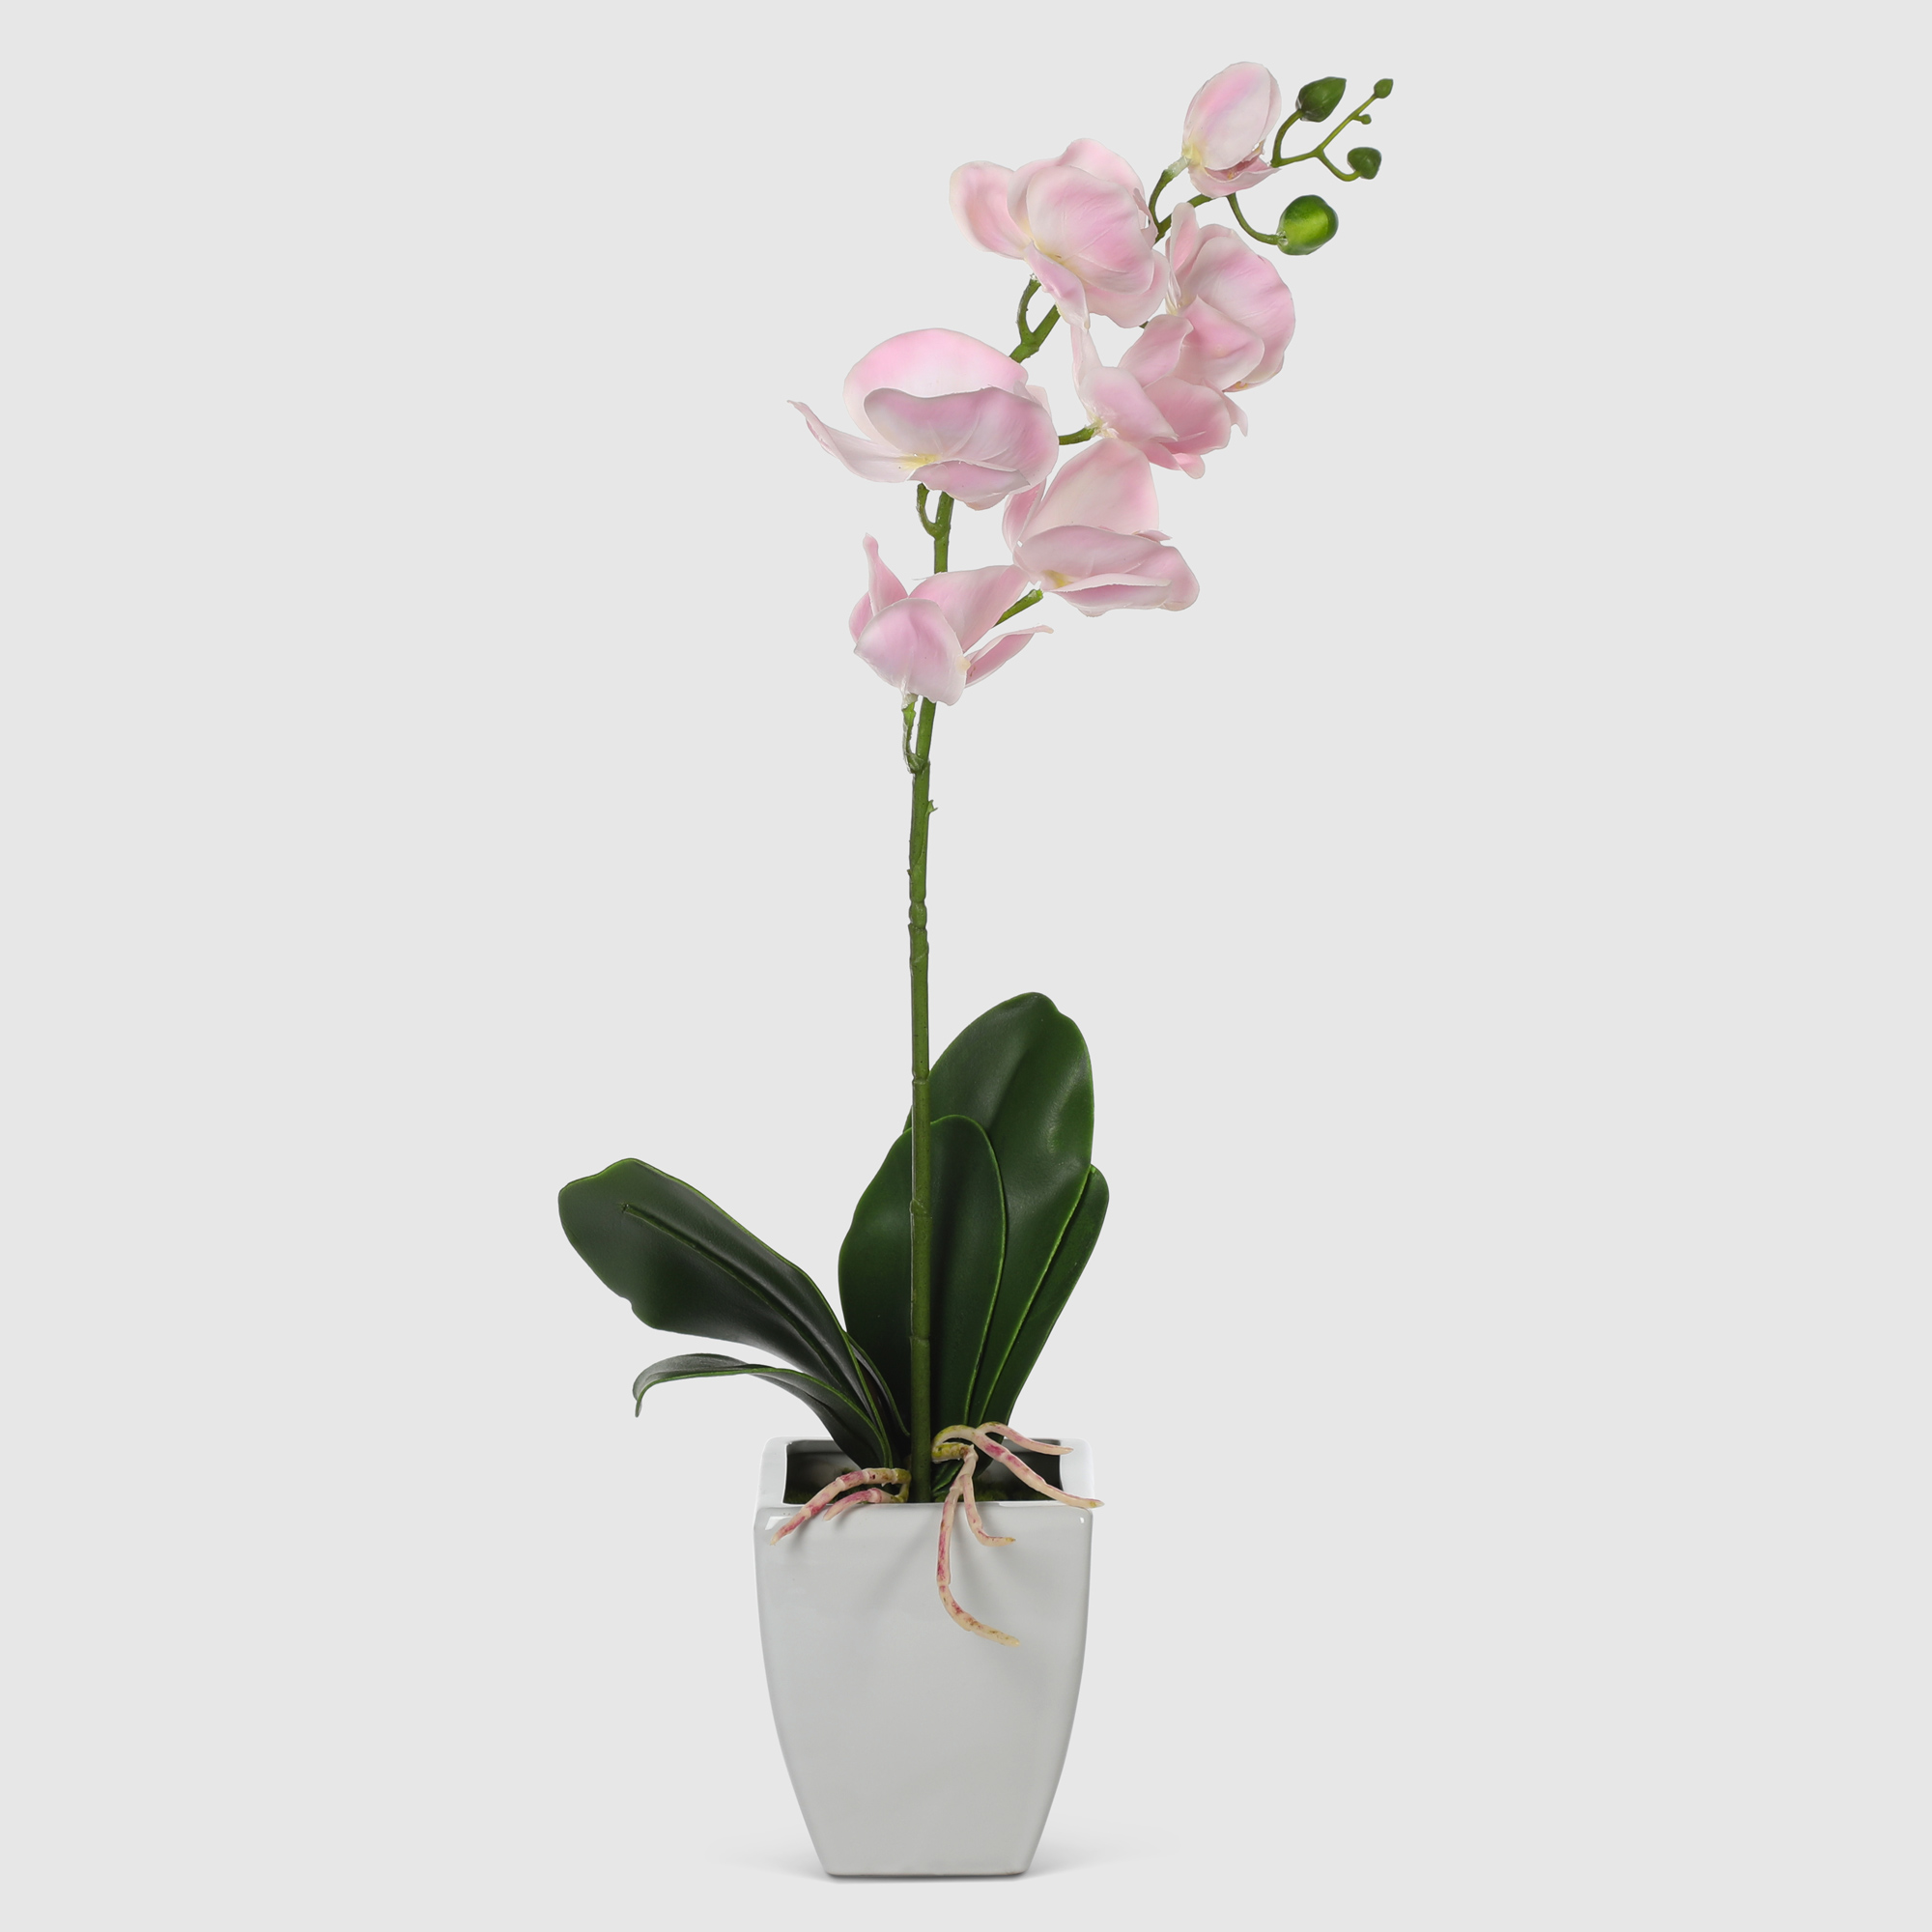 Орхидея в белом кашпо Конэко-О 575_10159_185 60 см орхидея фаленопсис конэко о в кашпо 70 см